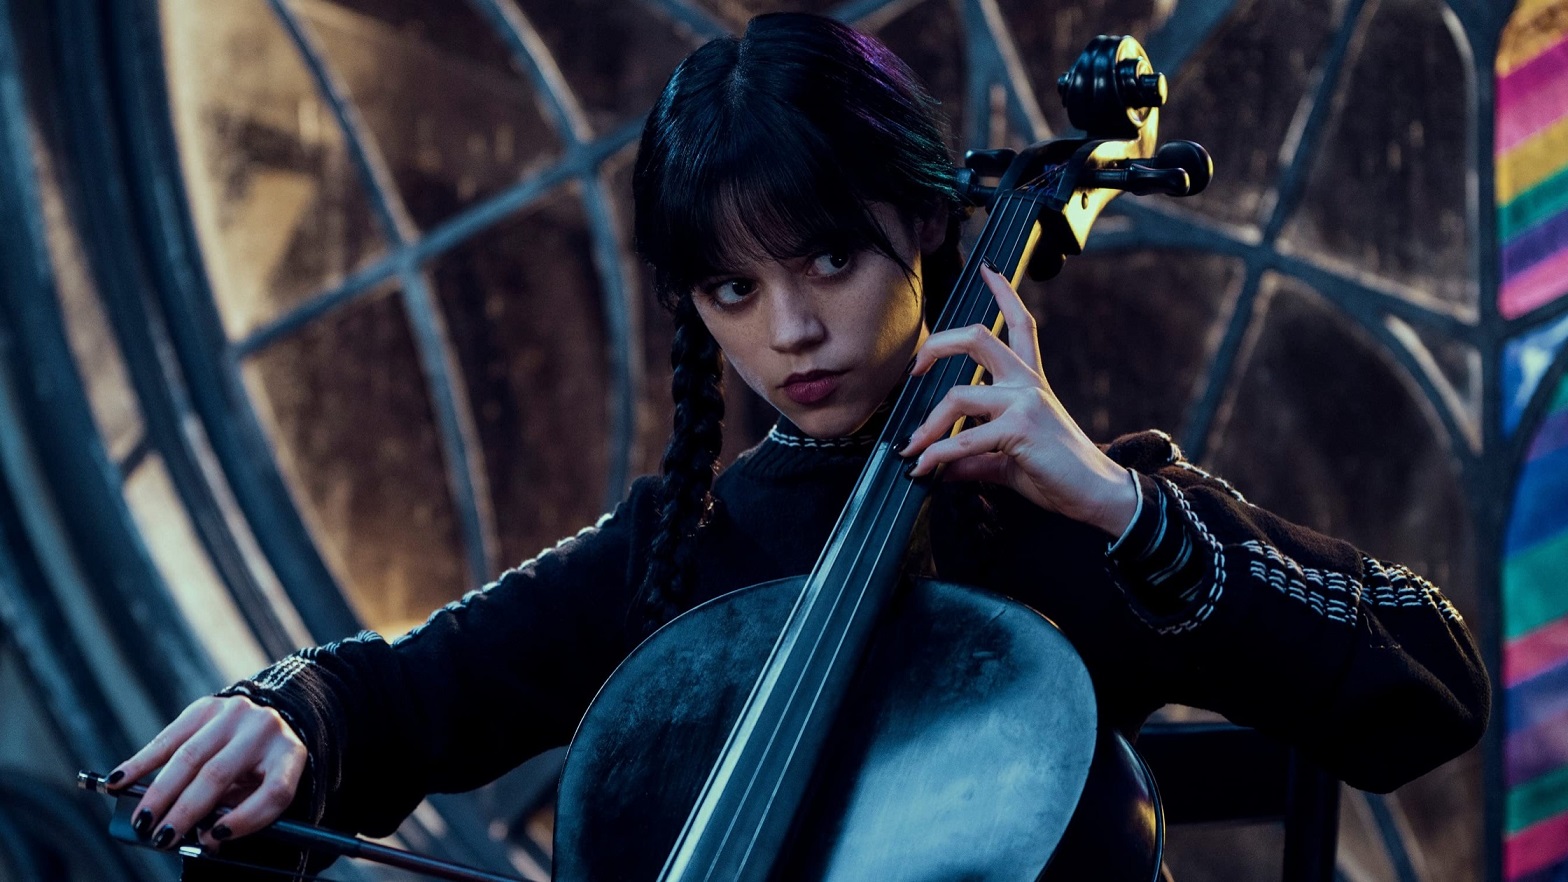 Wandinha - Jenna Ortega realmente sabe tocar violoncelo? - Critical Hits